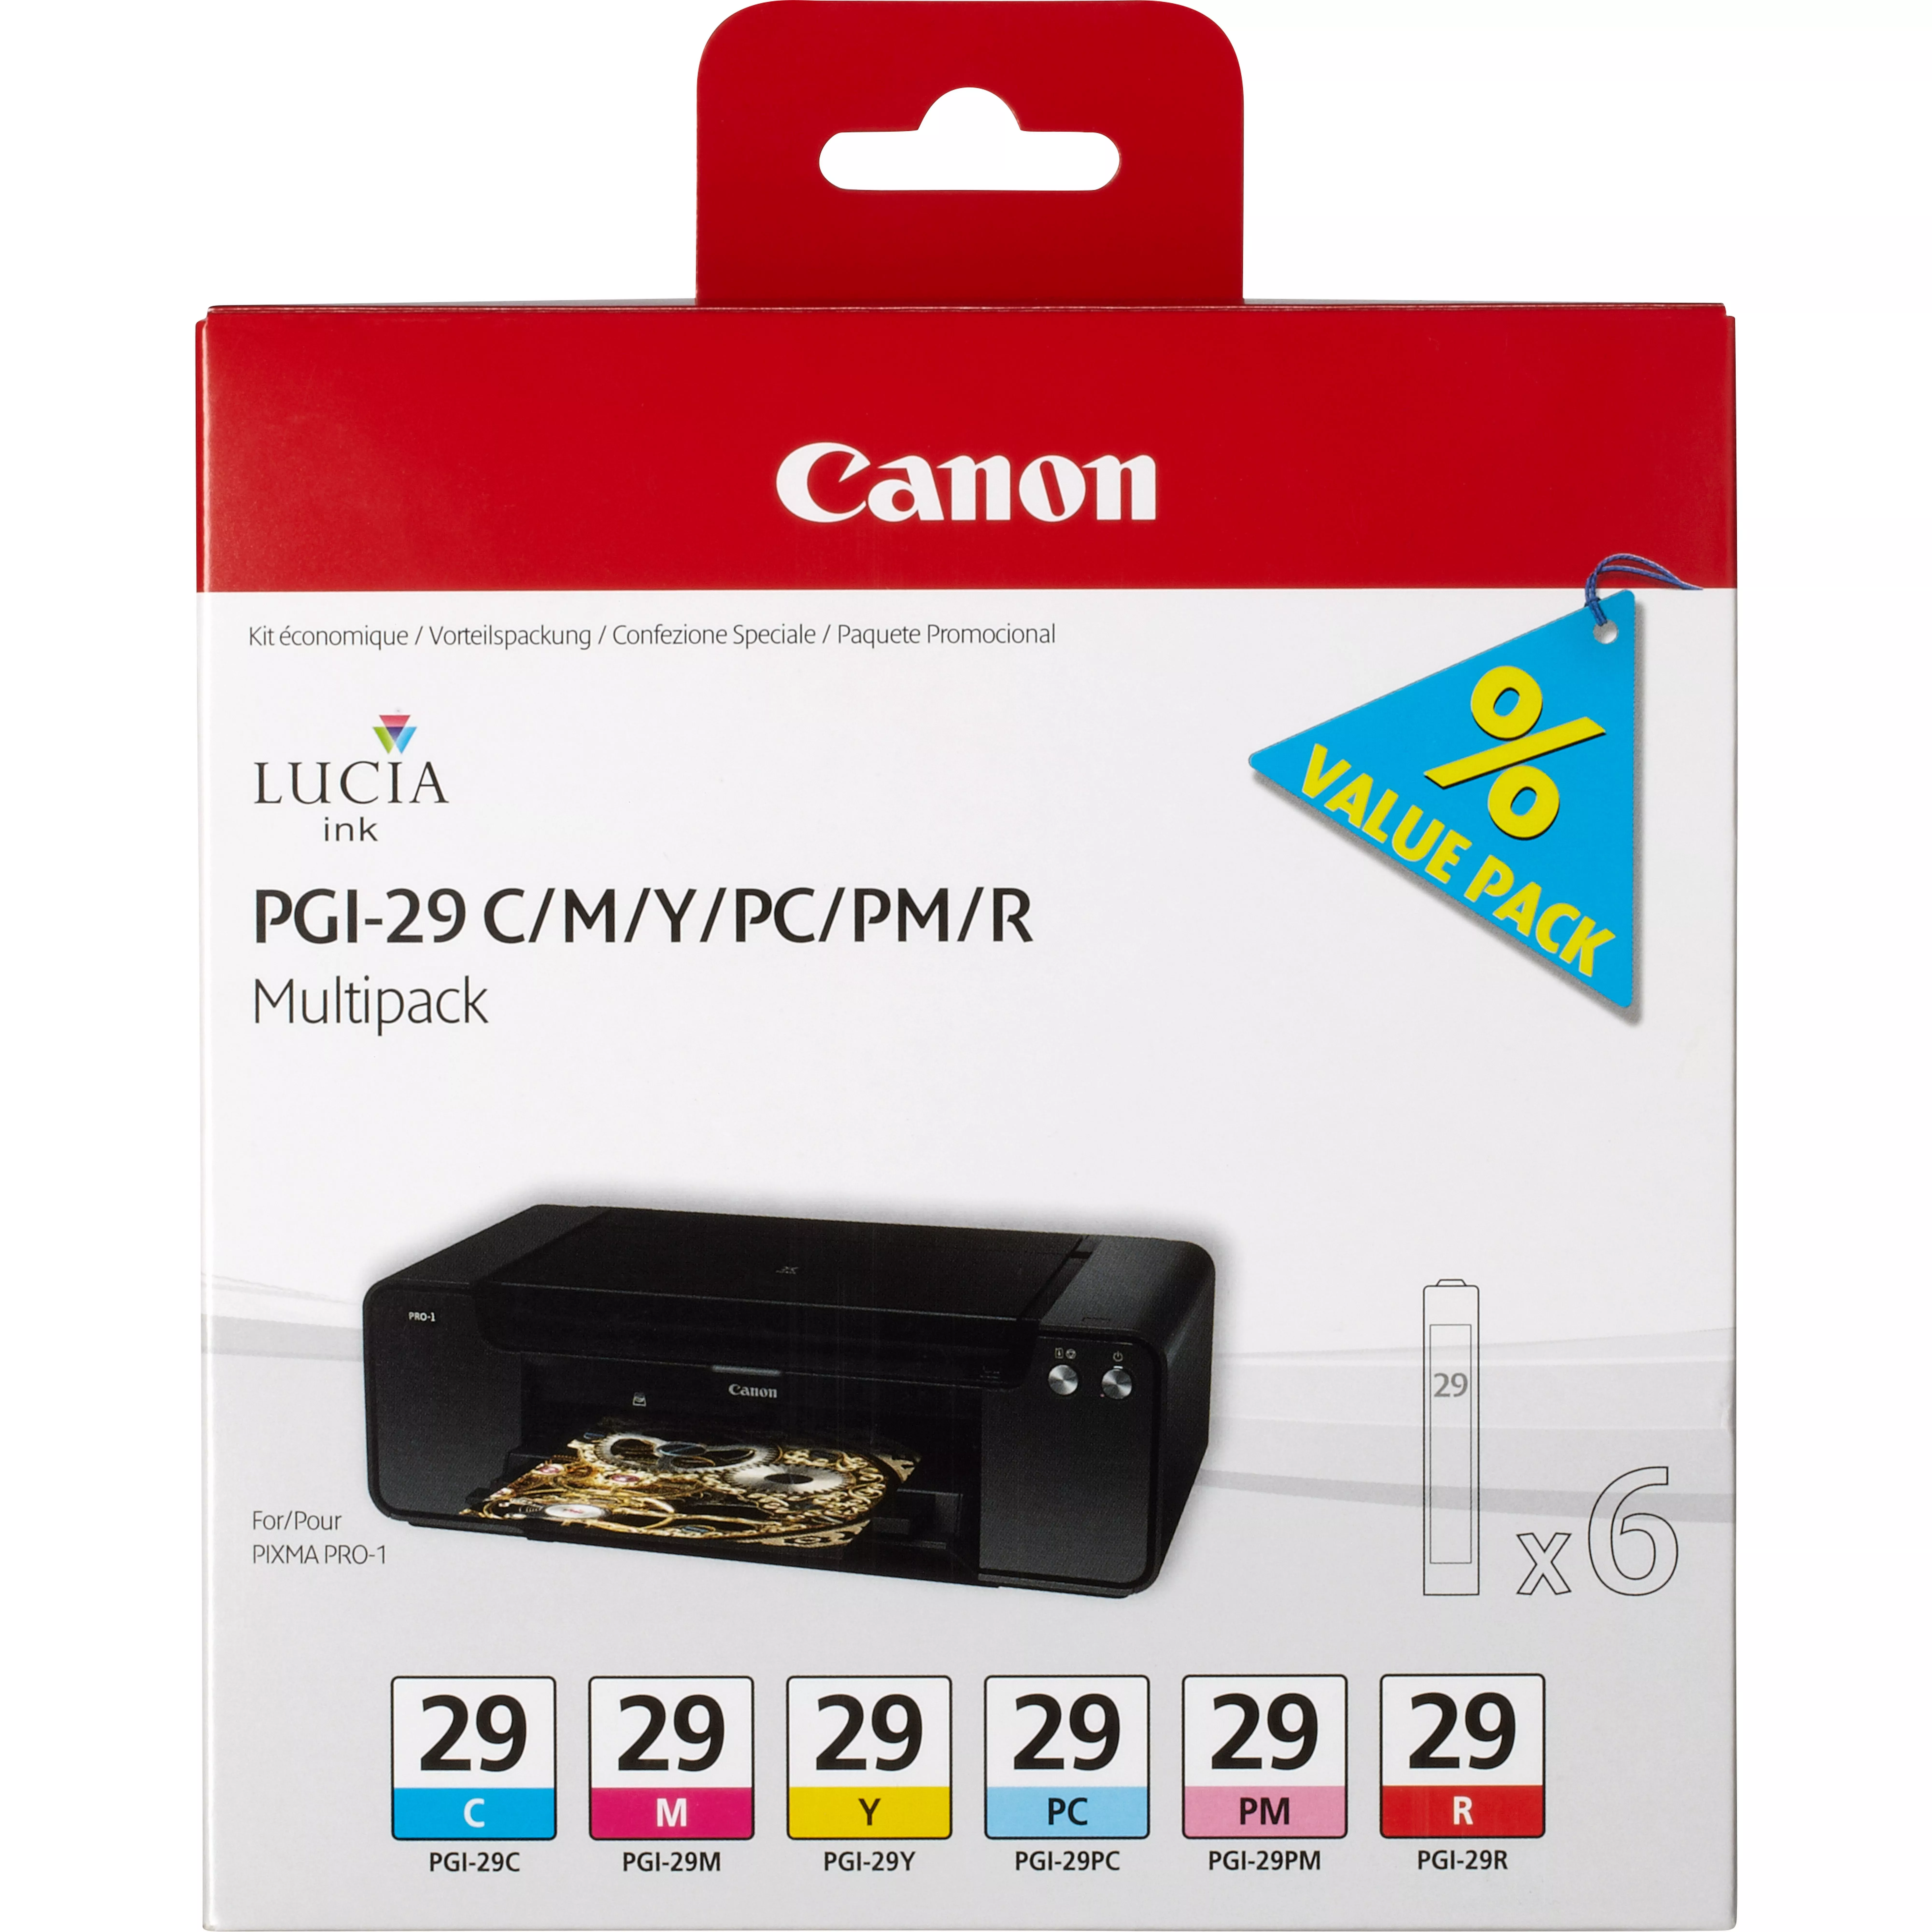 Achat CANON 1LB PGI-29 CMY/PC/PM/R ink cartridge colour au meilleur prix